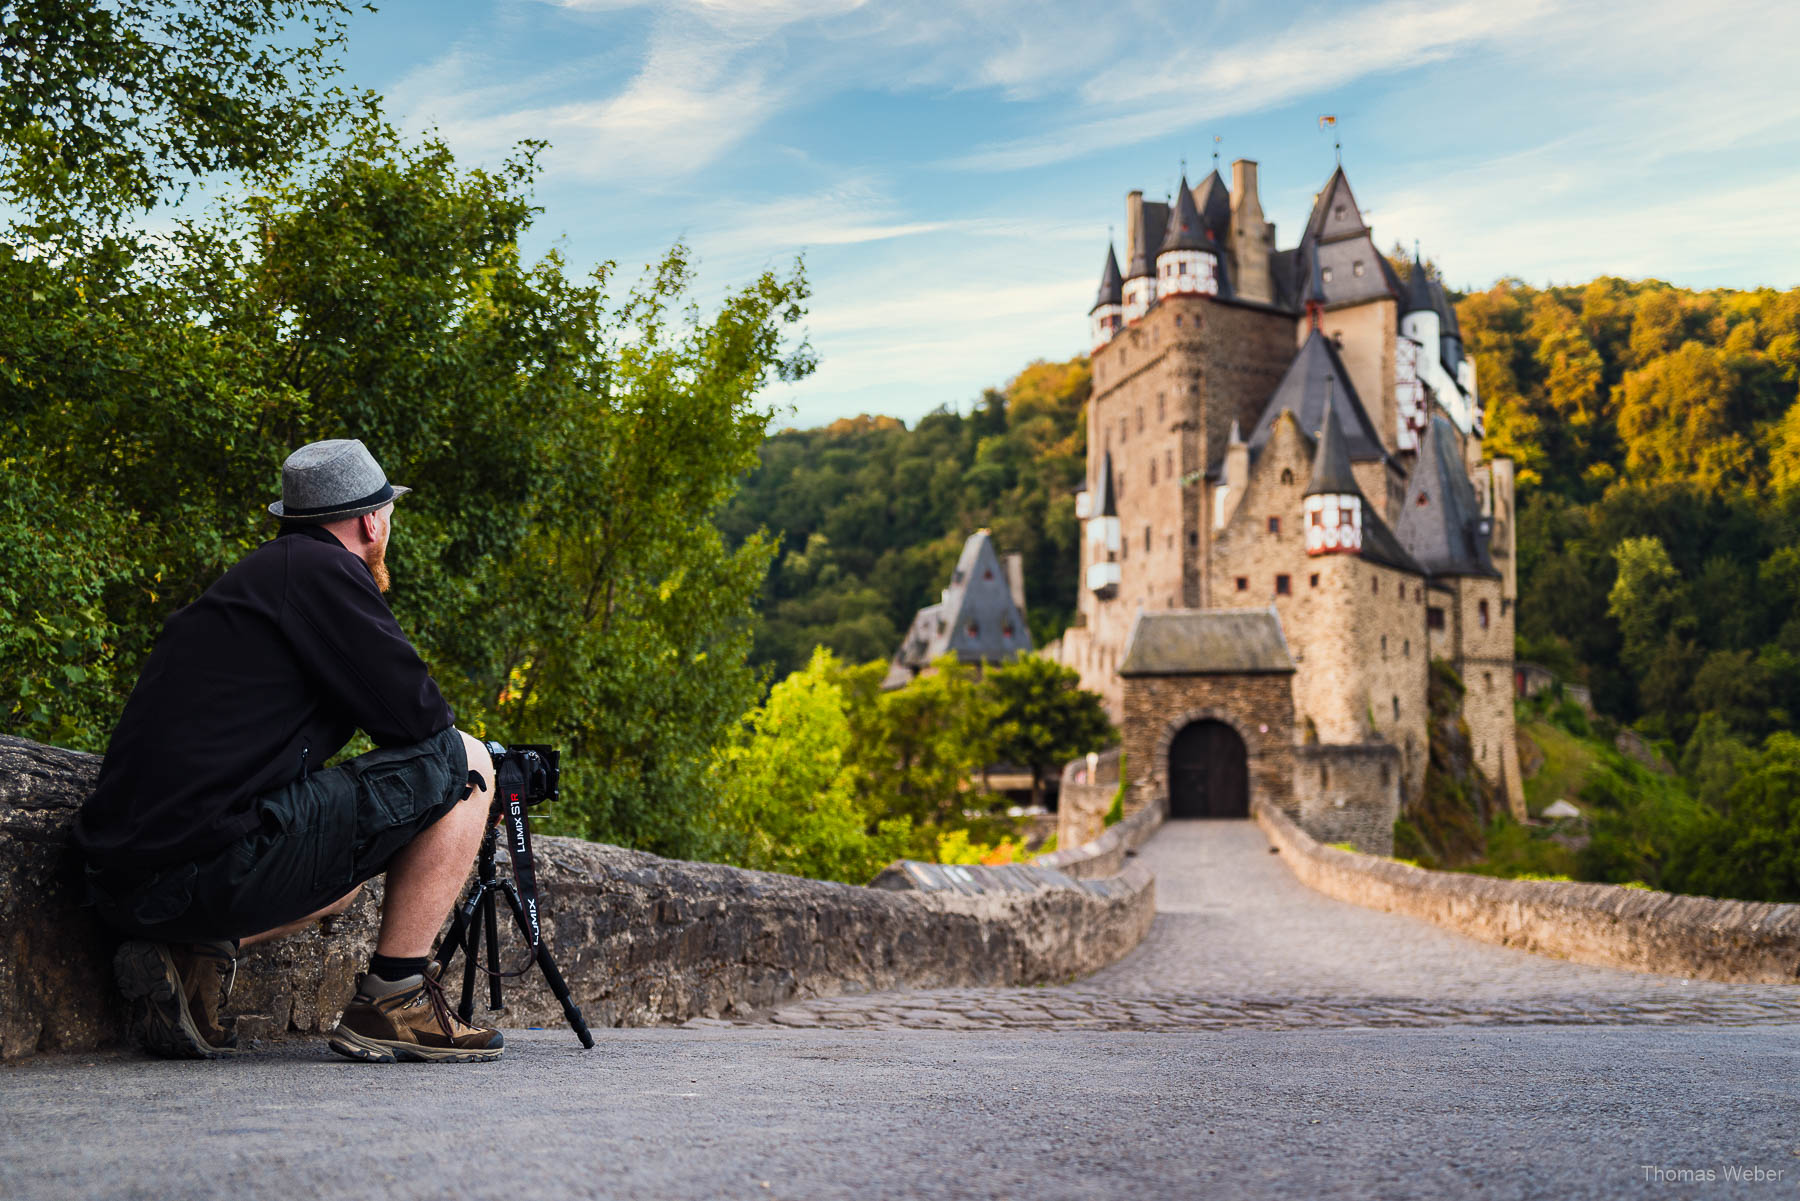 Hochmittelalterliche Burg in Deutschland, Fotograf Thomas Weber aus Oldenburg